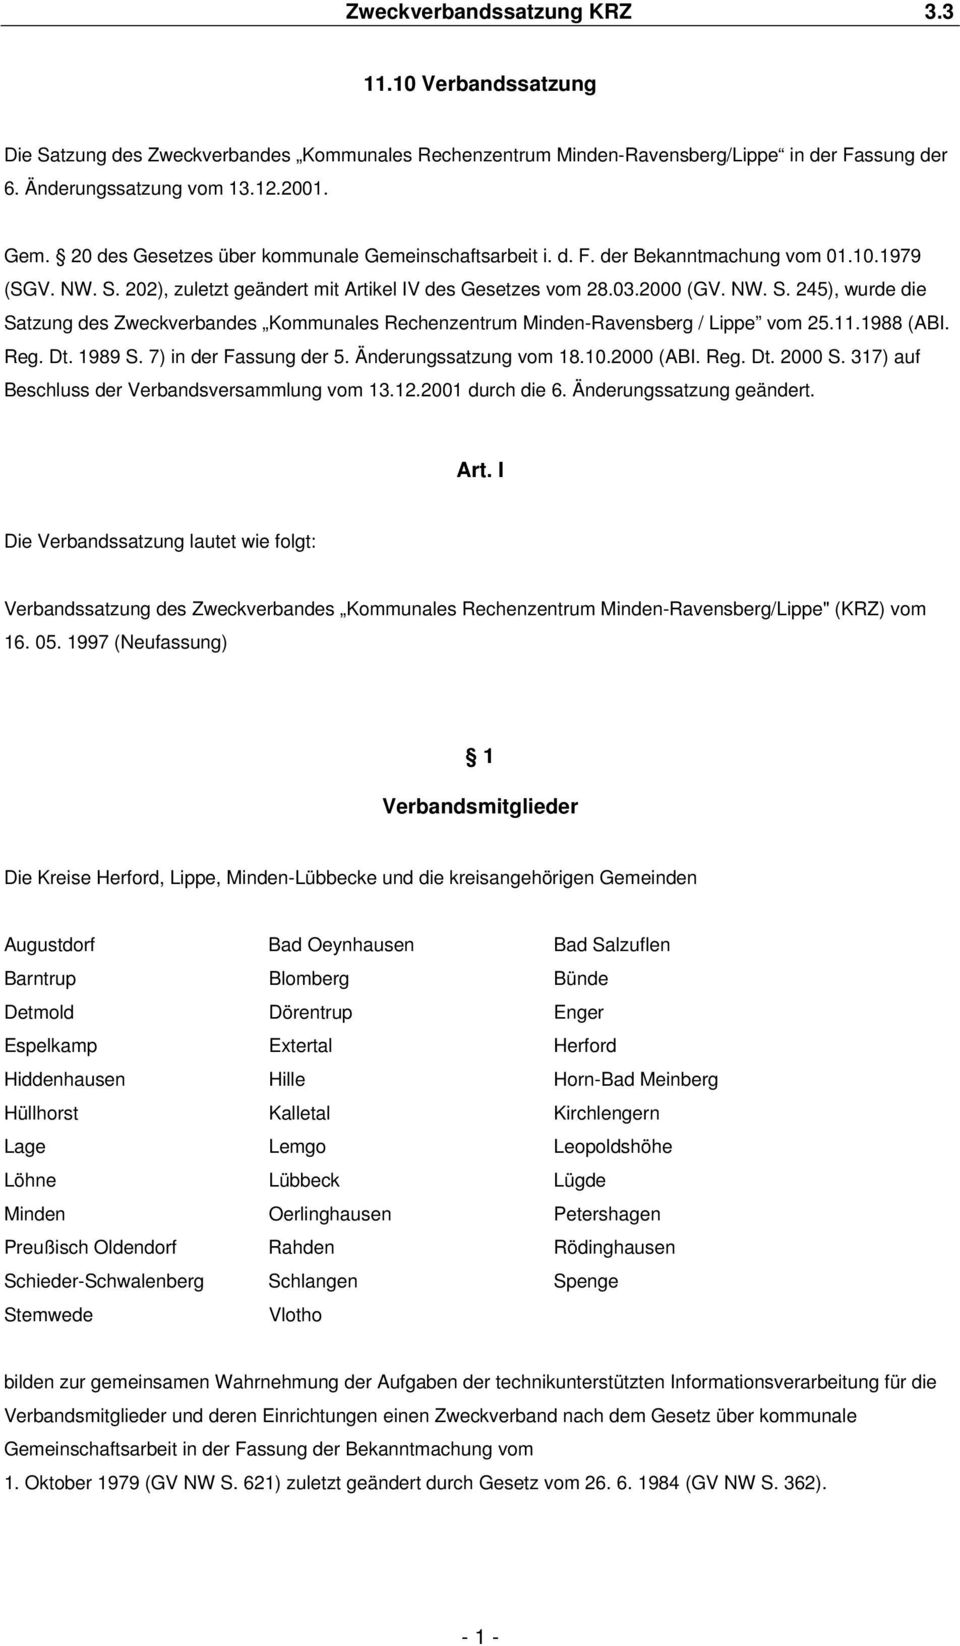 202), zuletzt geändert mit Artikel IV des Gesetzes vom 28.03.2000 (GV. NW. S. 245), wurde die Satzung des Zweckverbandes Kommunales Rechenzentrum Minden-Ravensberg / Lippe vom 25.11.1988 (ABI. Reg.